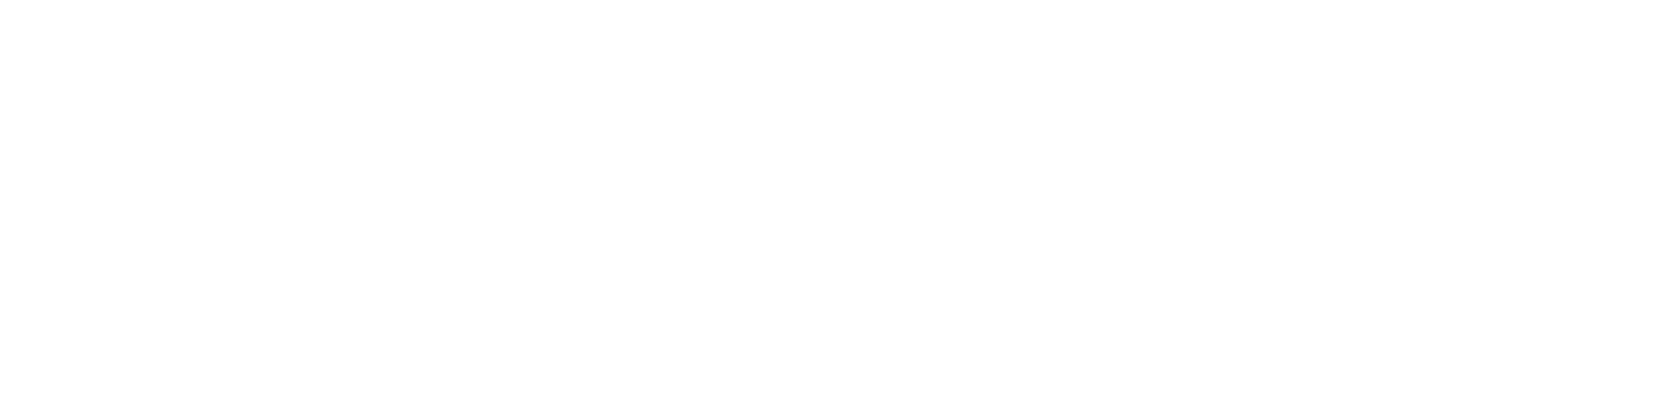 AstraZeneca logo large for dark backgrounds (transparent PNG)